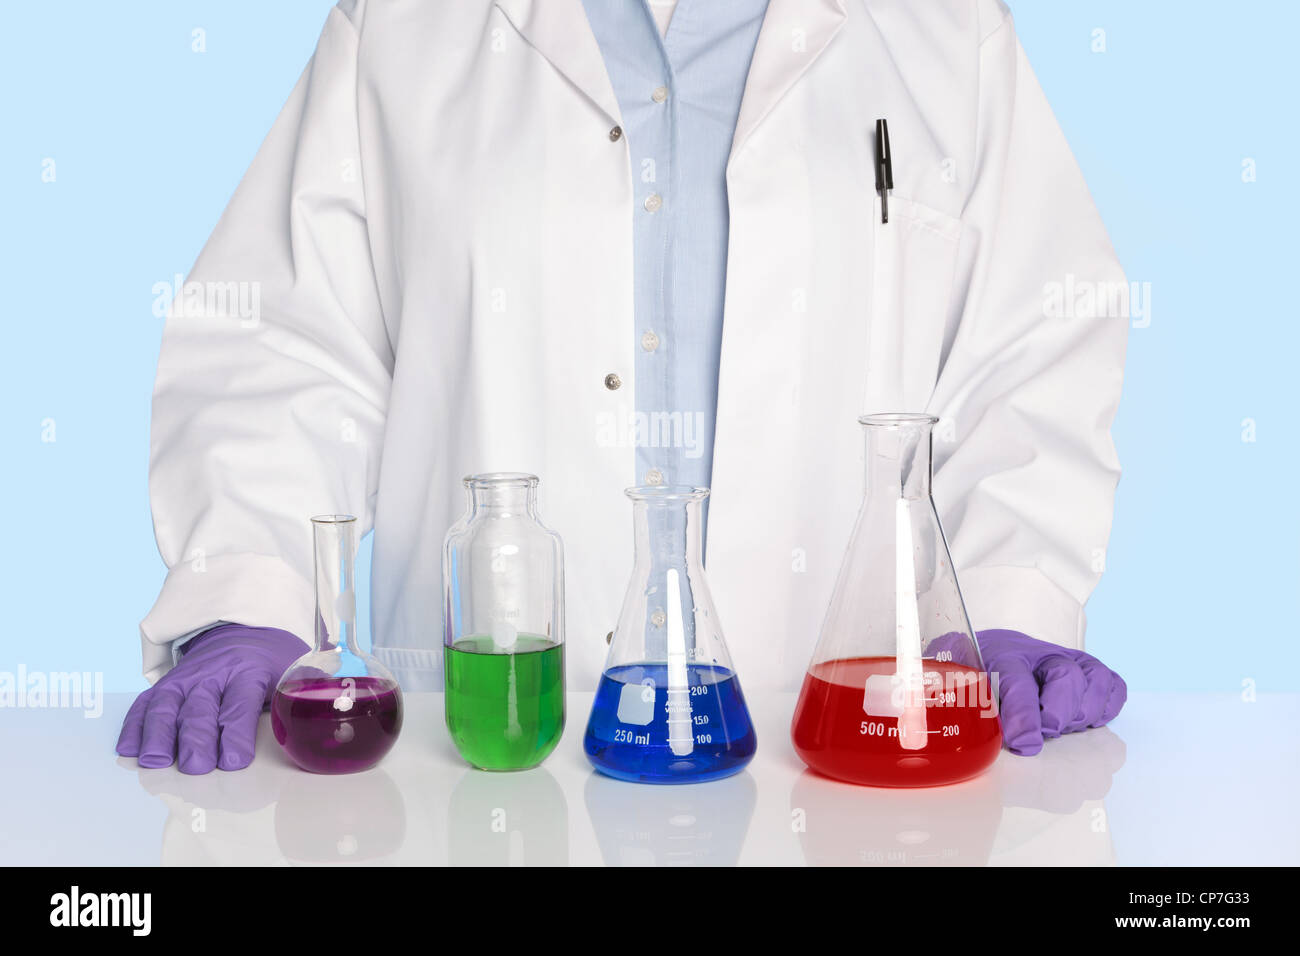 Photo d'un enseignant de chimie ou scientifique debout à un comptoir/bureau avec une ligne de produits chimiques Banque D'Images